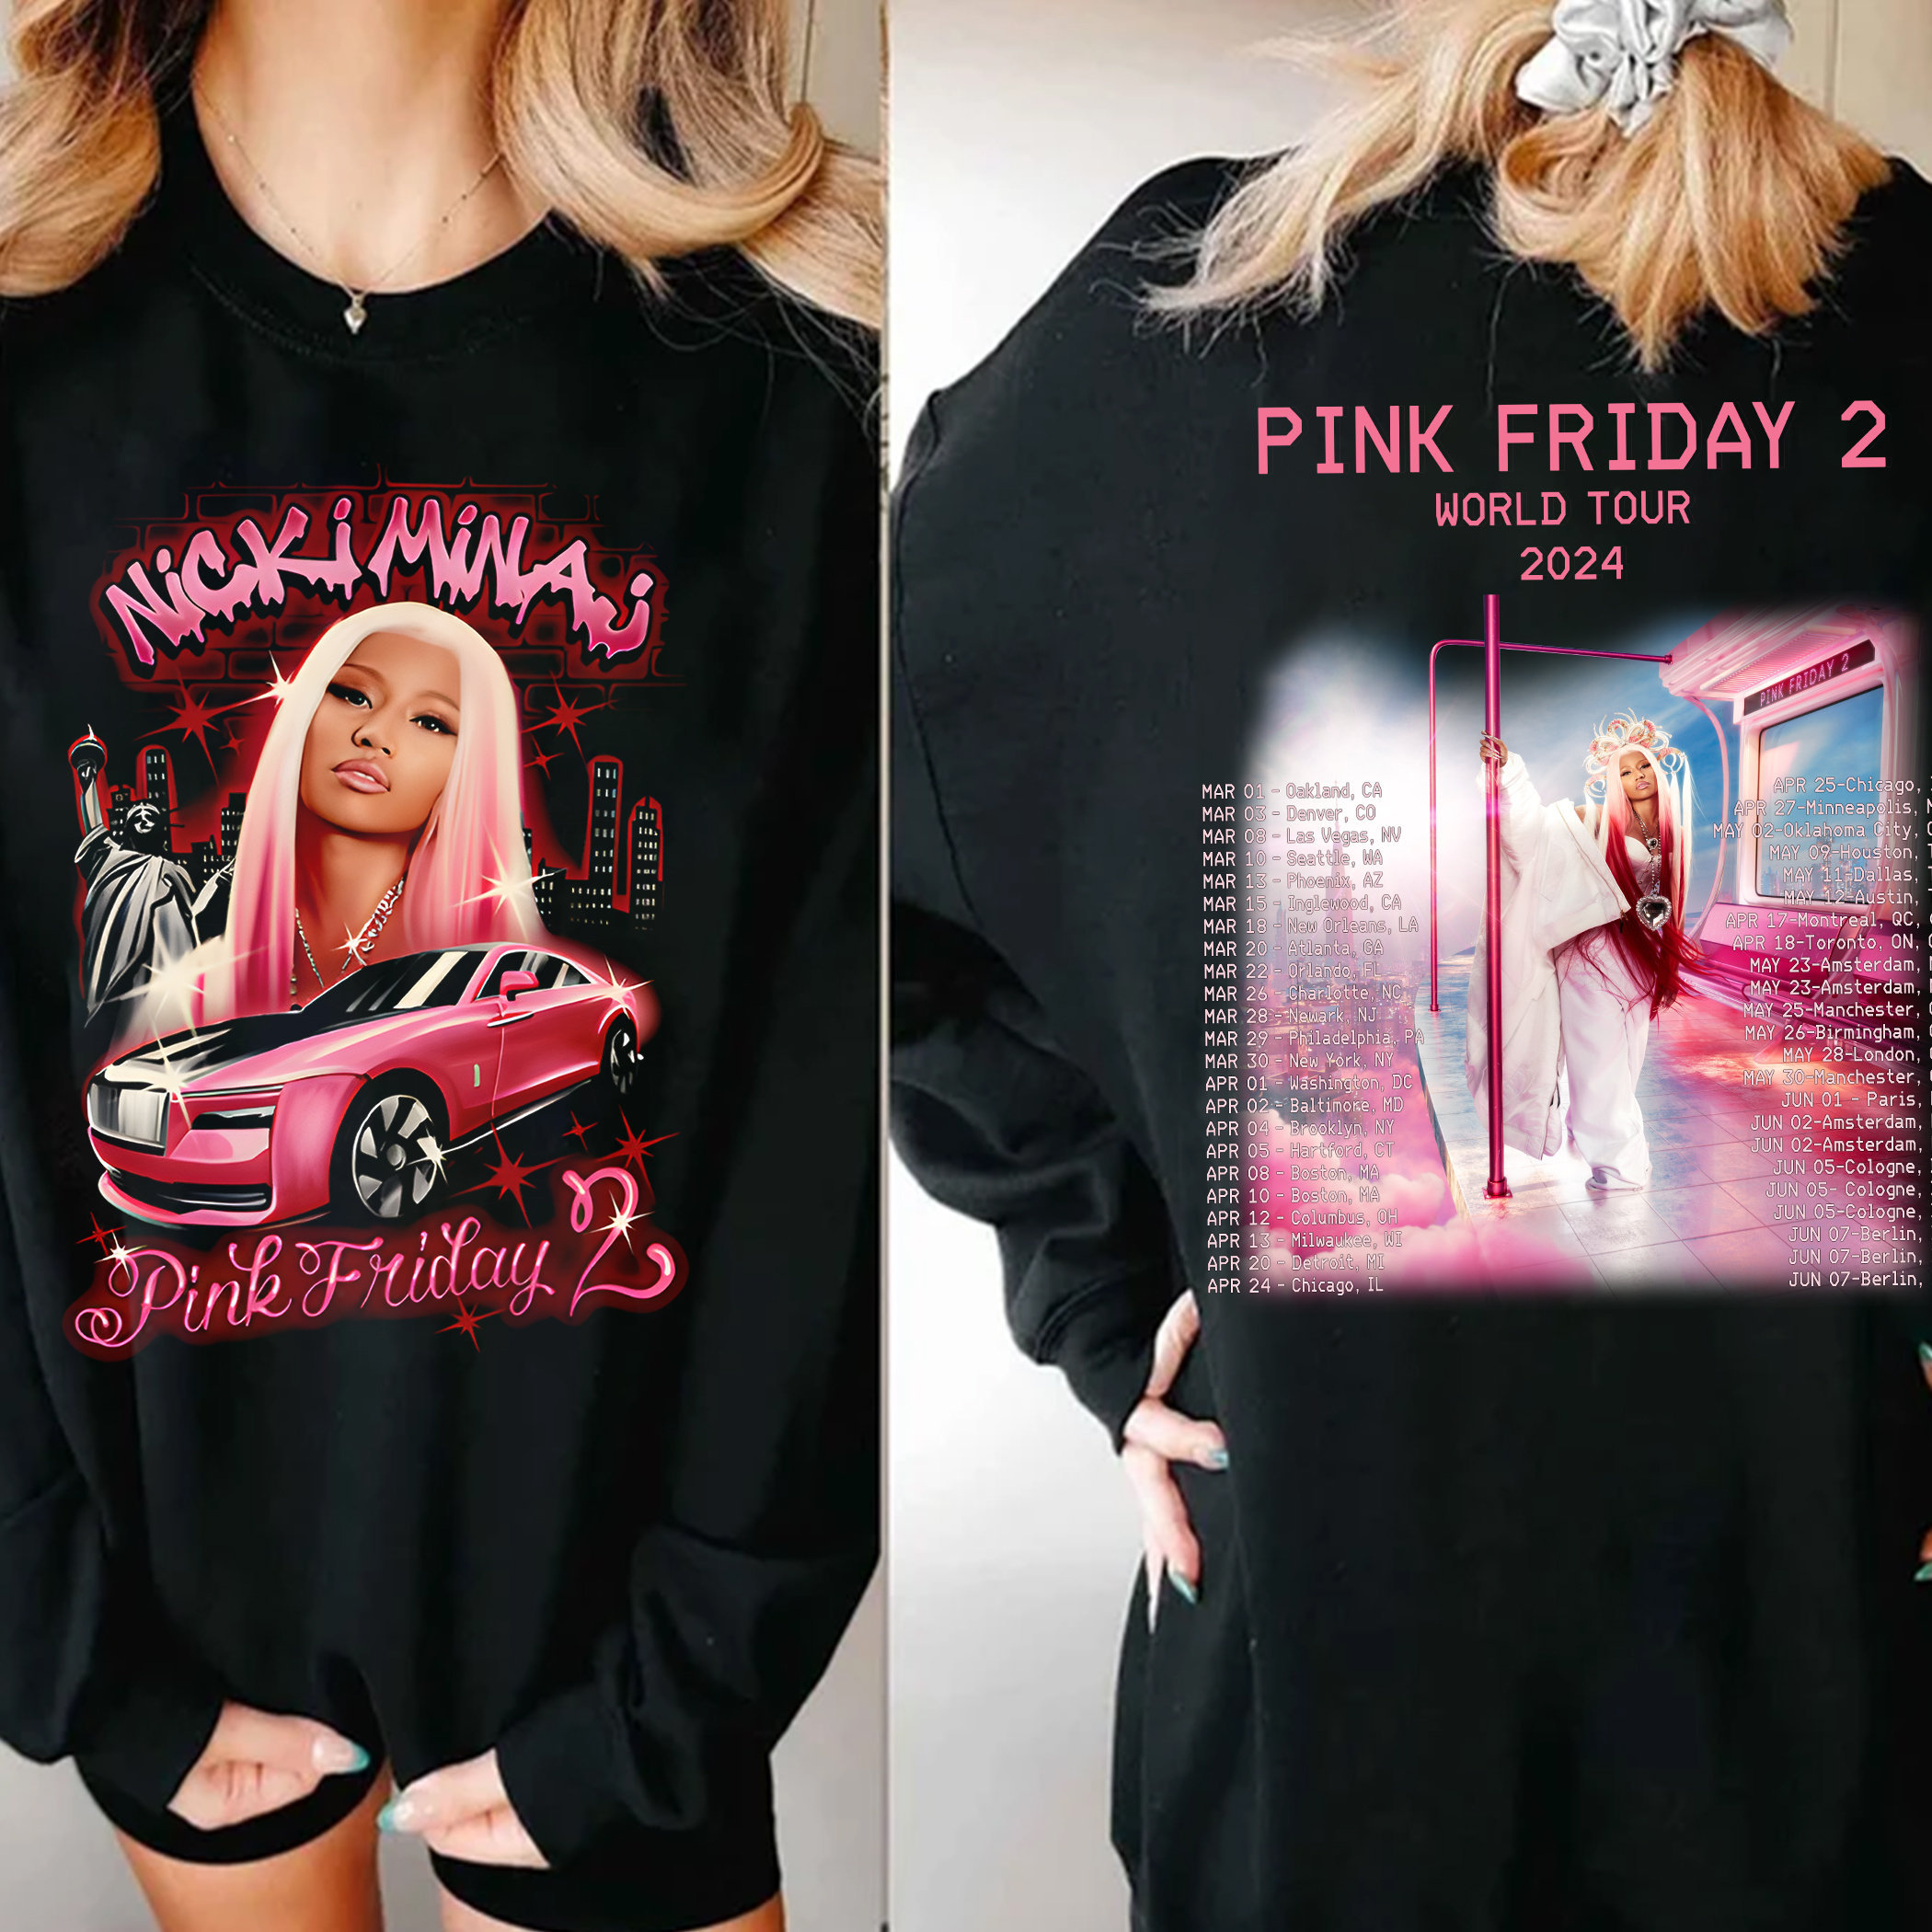 Nicki Minaj 2 Sided Shirt, Nicki Minaj Tour Shirt, Pink Friday 2 Airbrush Shirt